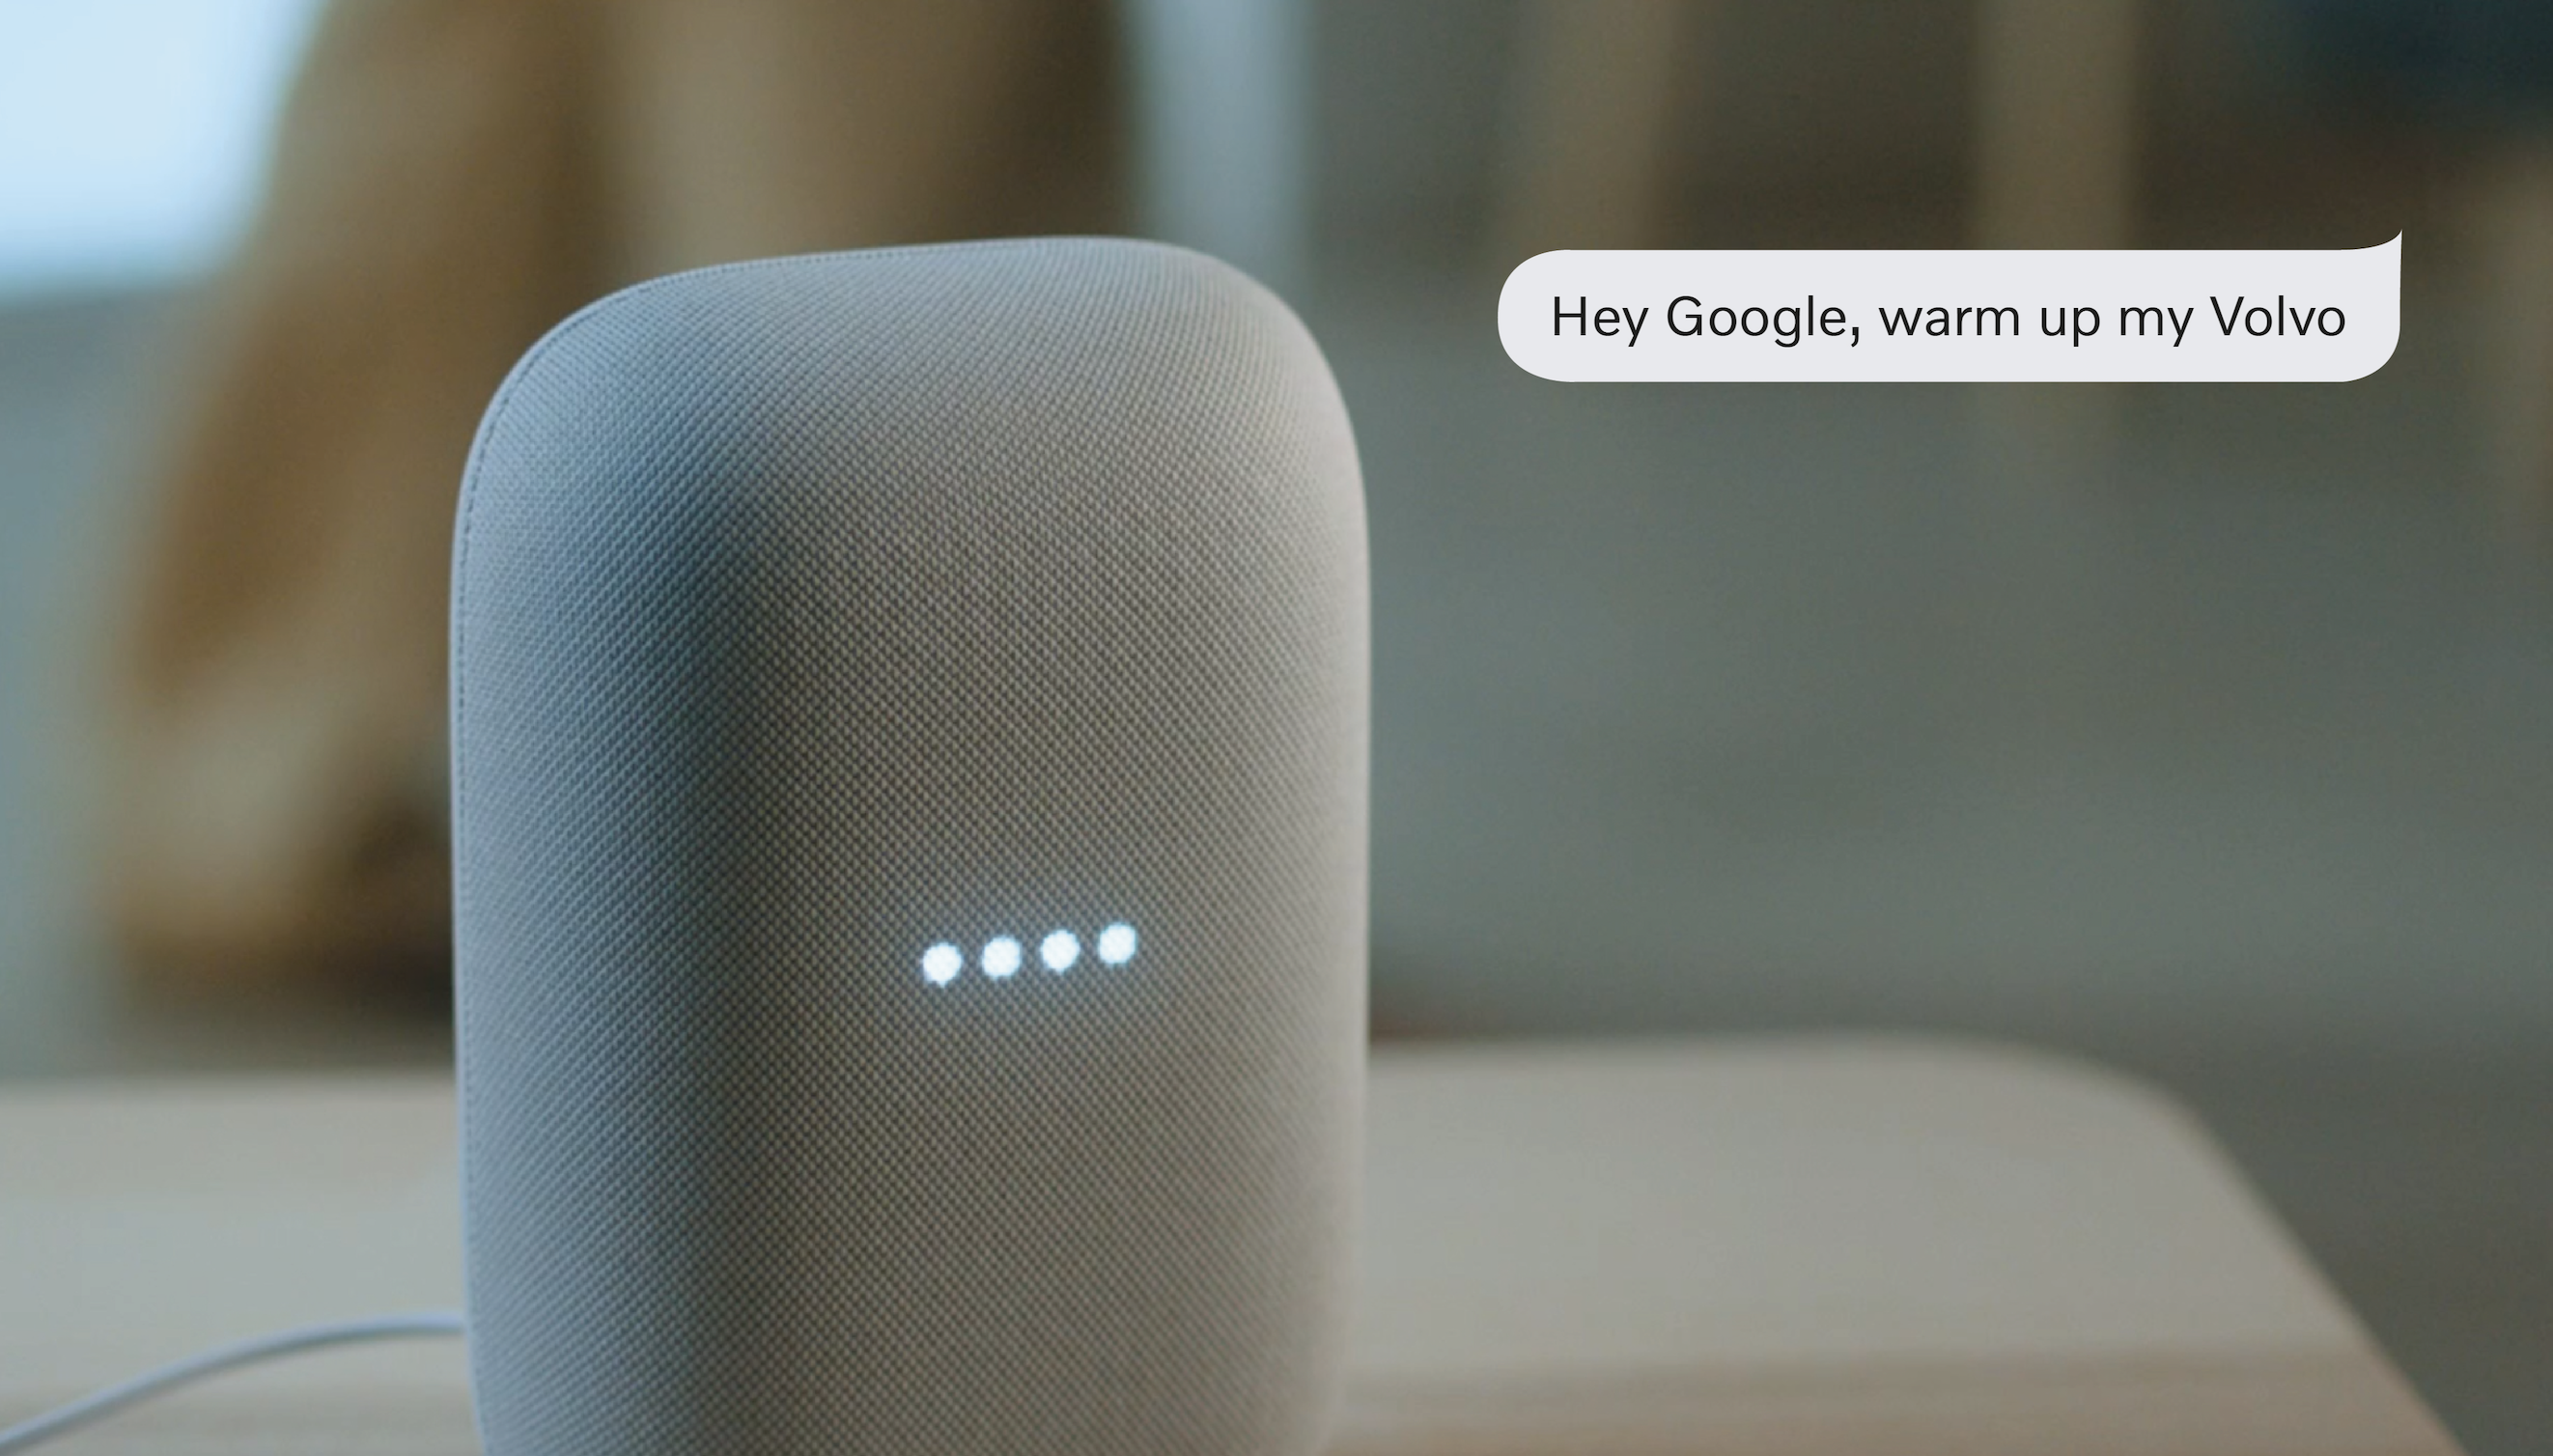 Asistente de voz del dispositivo Google Home para calentar el automóvil volvo